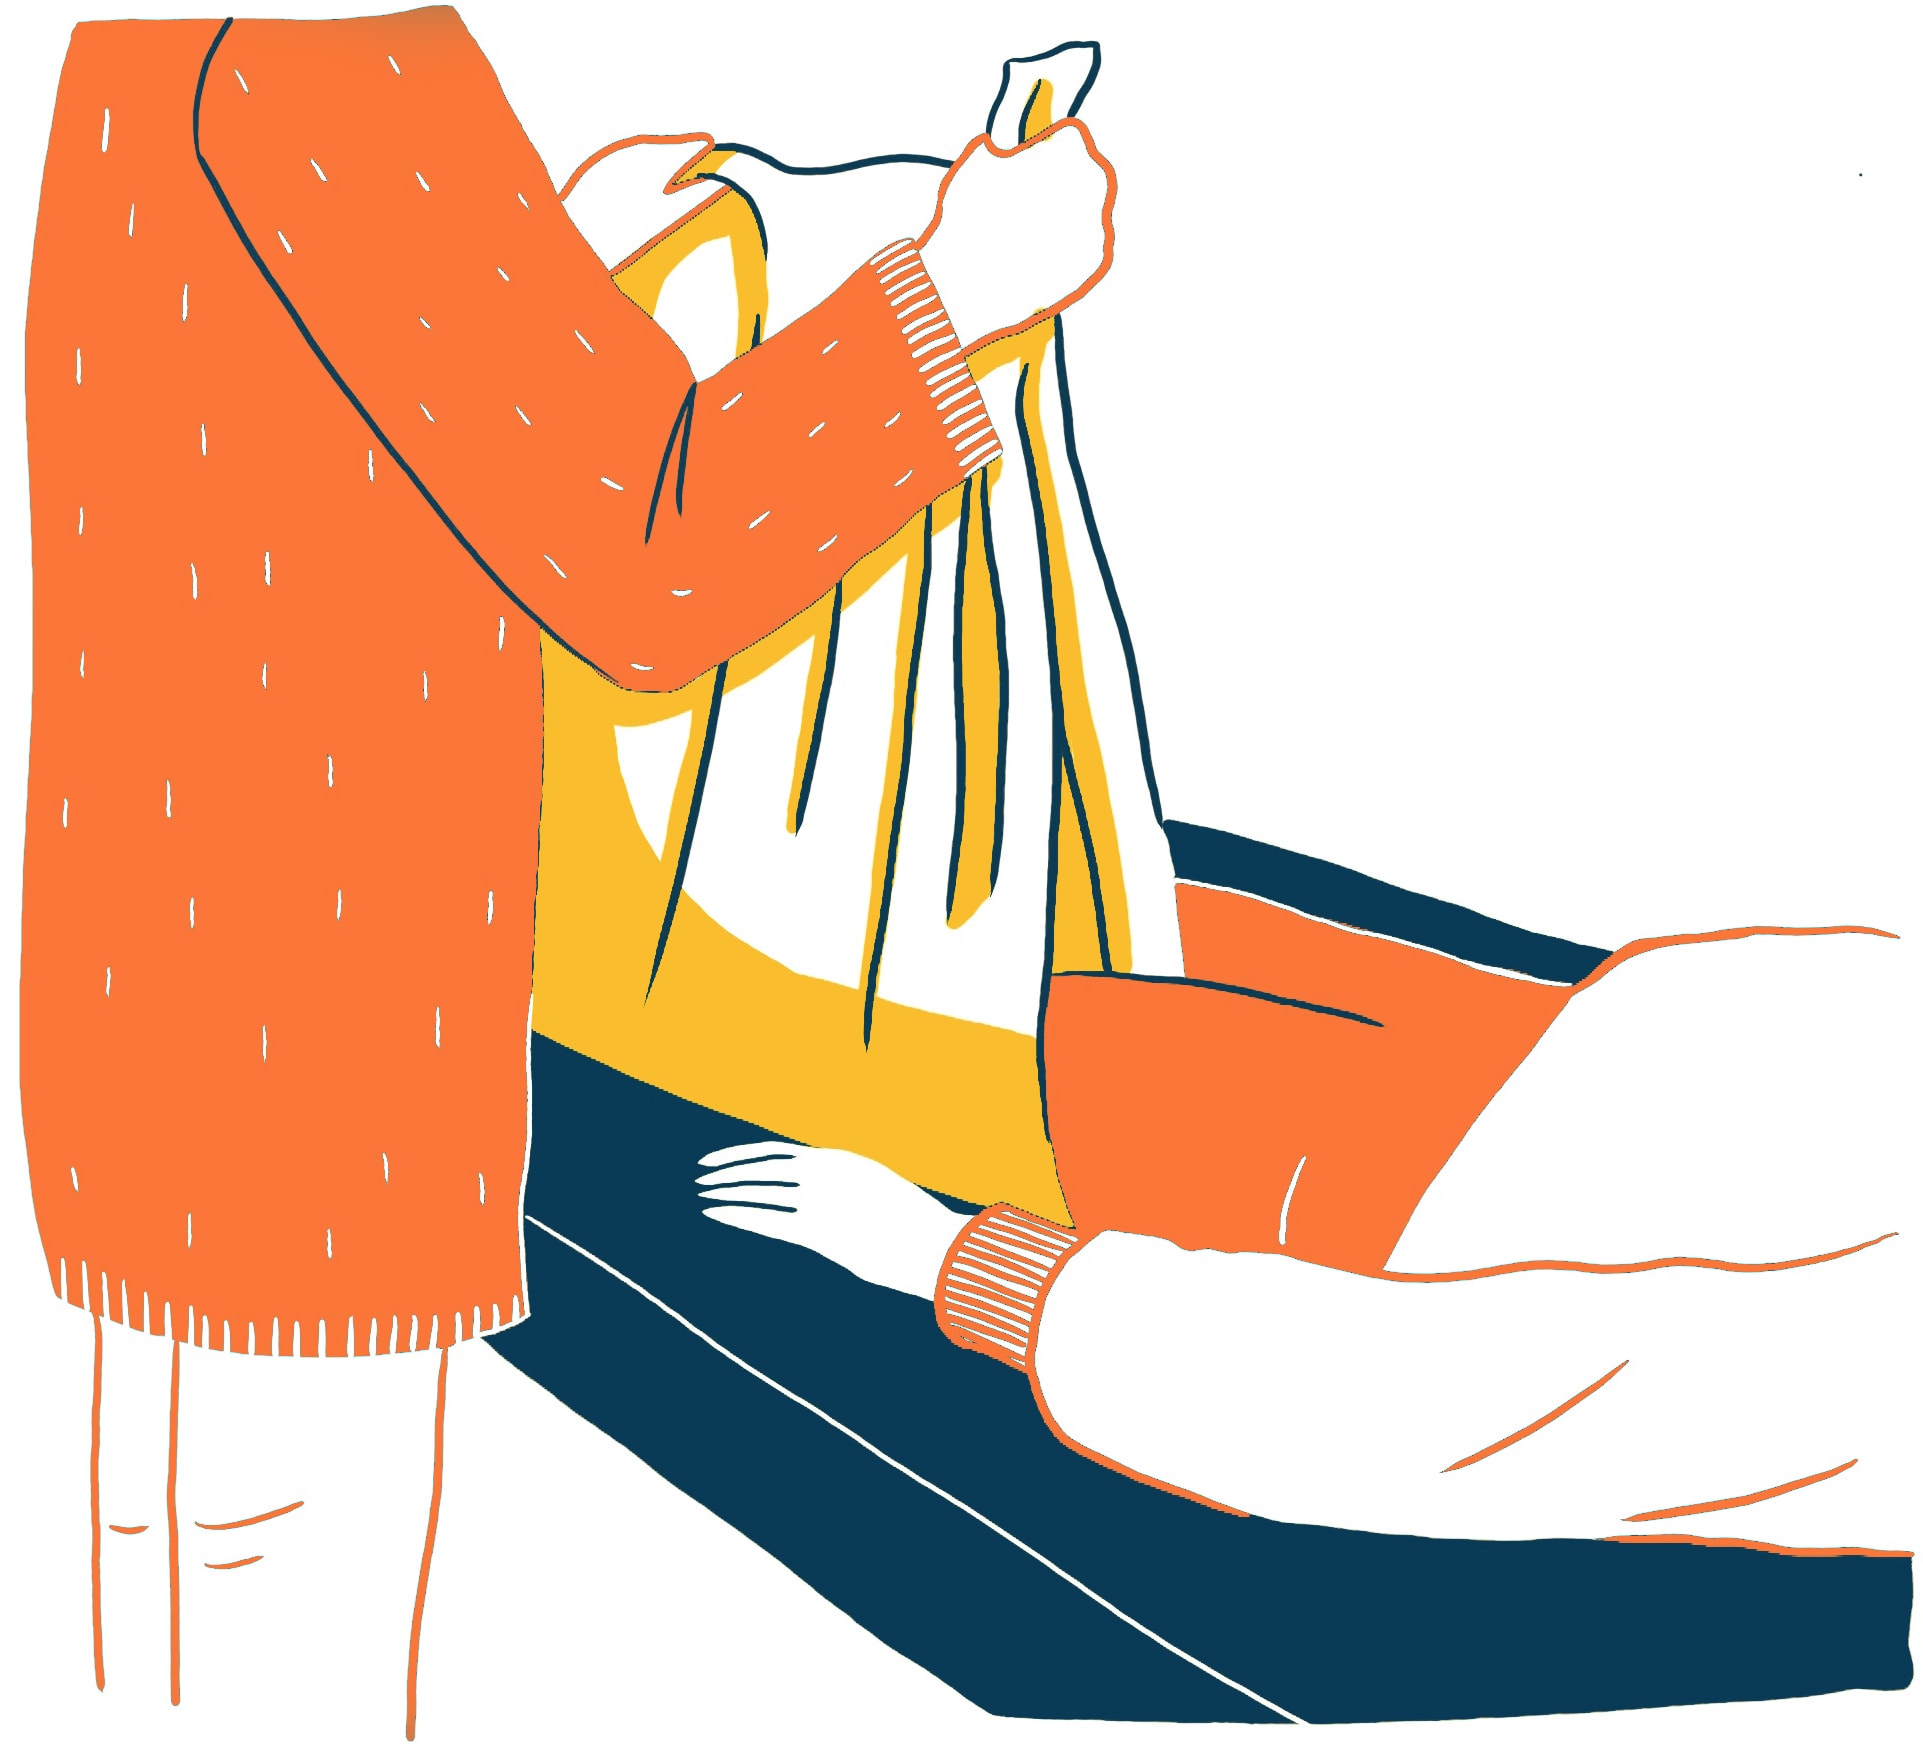 Wiegen einer Extremität: Eine stilisierte Illustration zeigt zwei teilweise sichtbare Figuren in Orange und Gelb. Eine Person wiegt in einer großen gelben 'Tasche', das Bein der anderen liegenden Person.